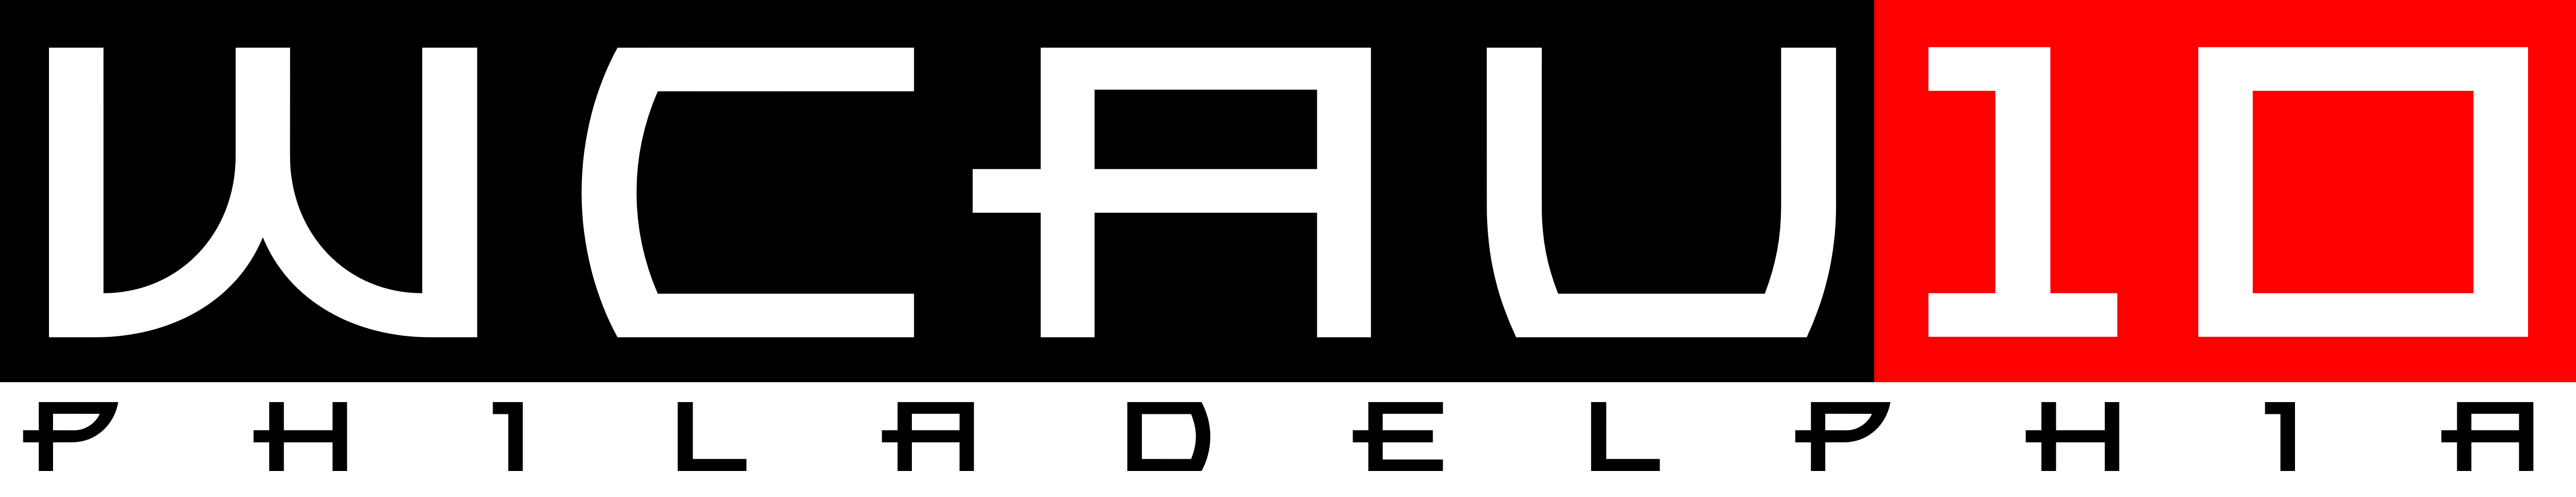 AlternateHistory.com's WCAU logo #1.png